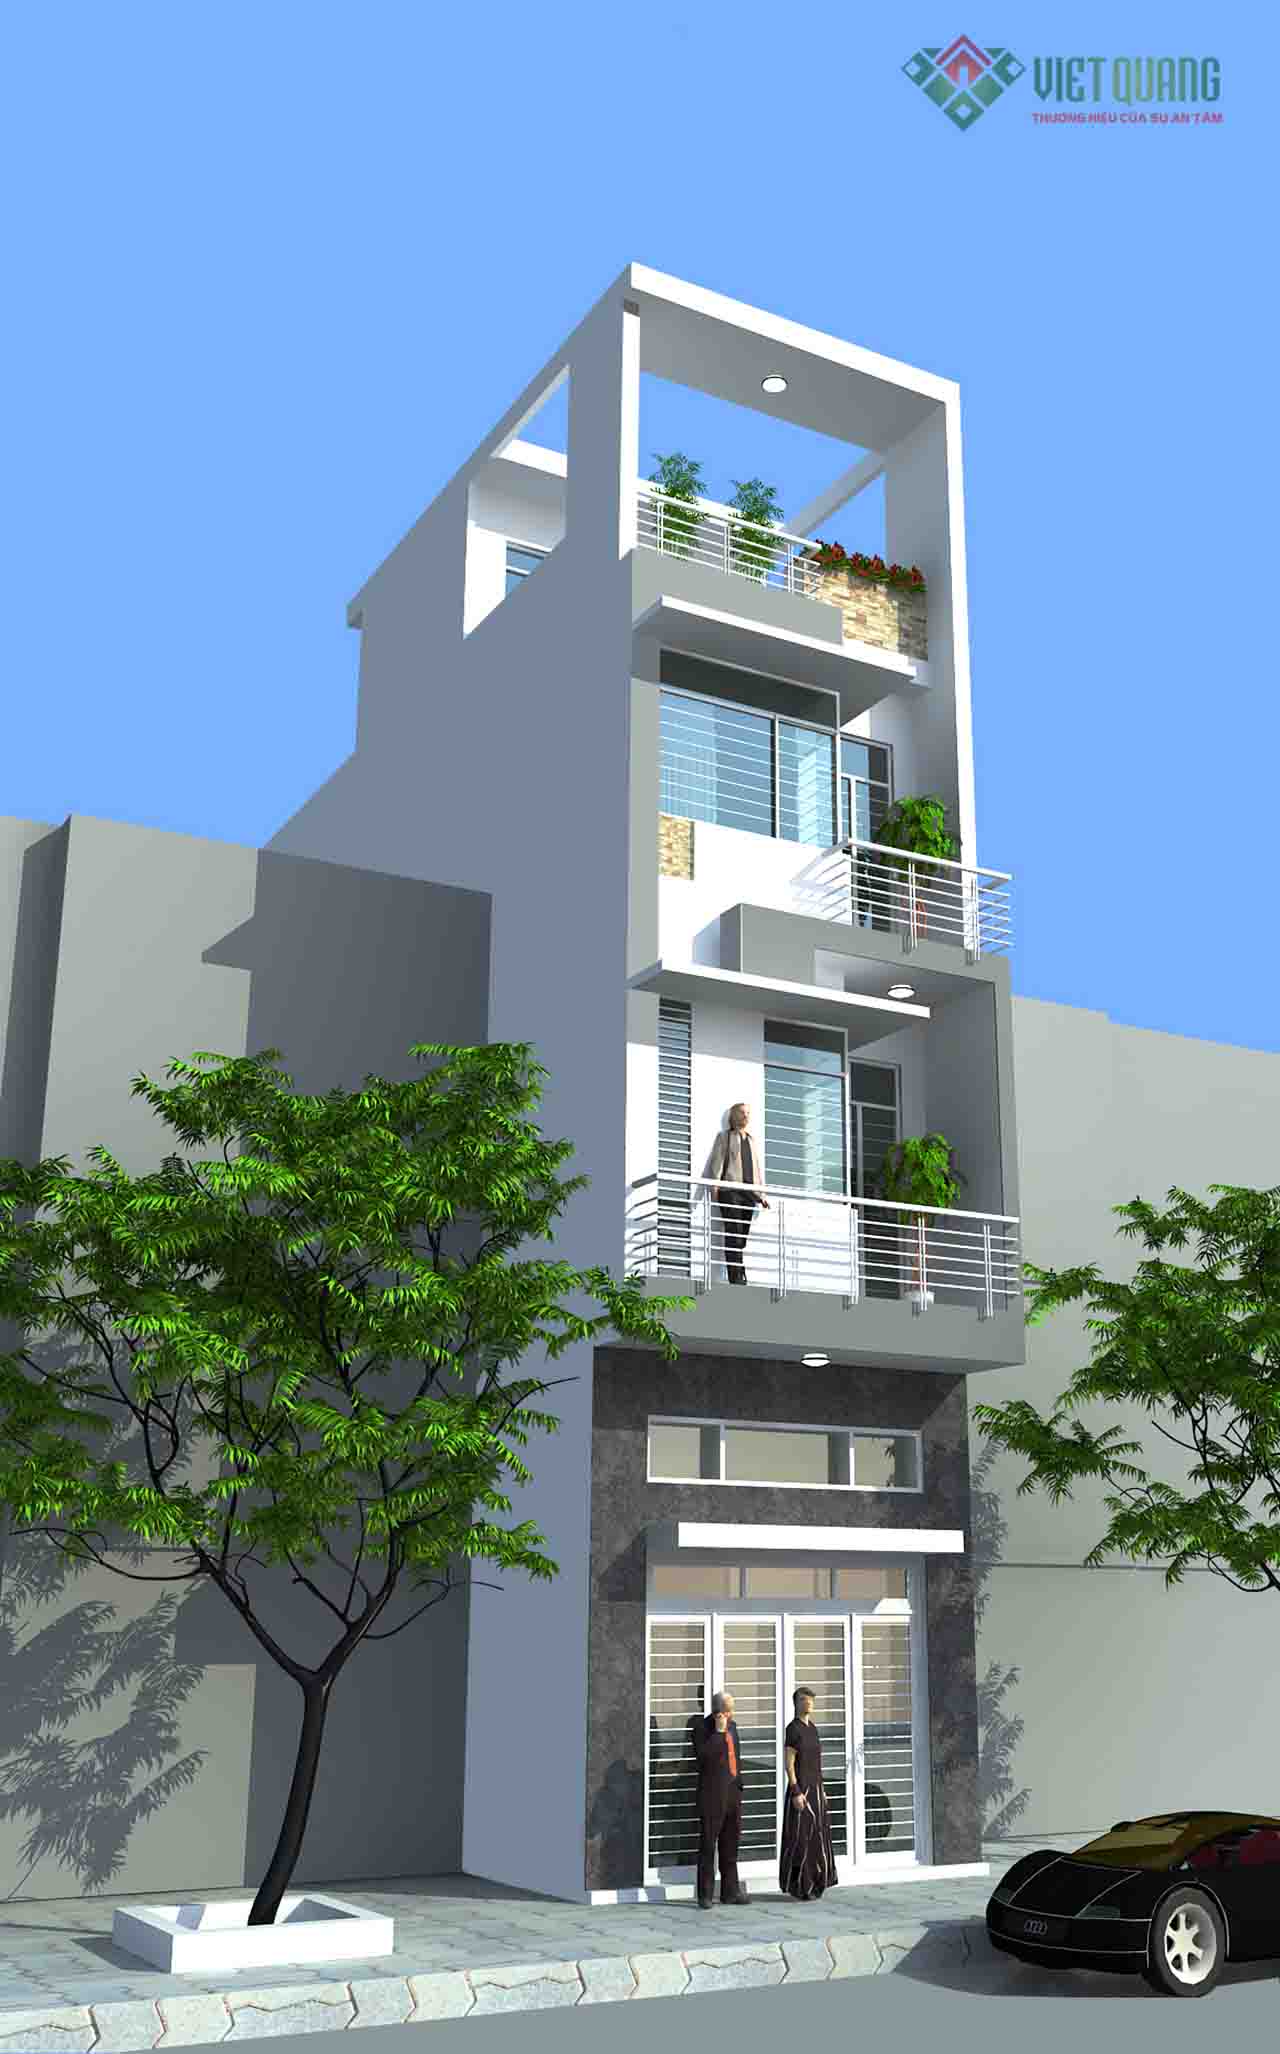 mẫu thiết kế nhà phố 4 tầng hiện đại – 56 diện tích 4x12m